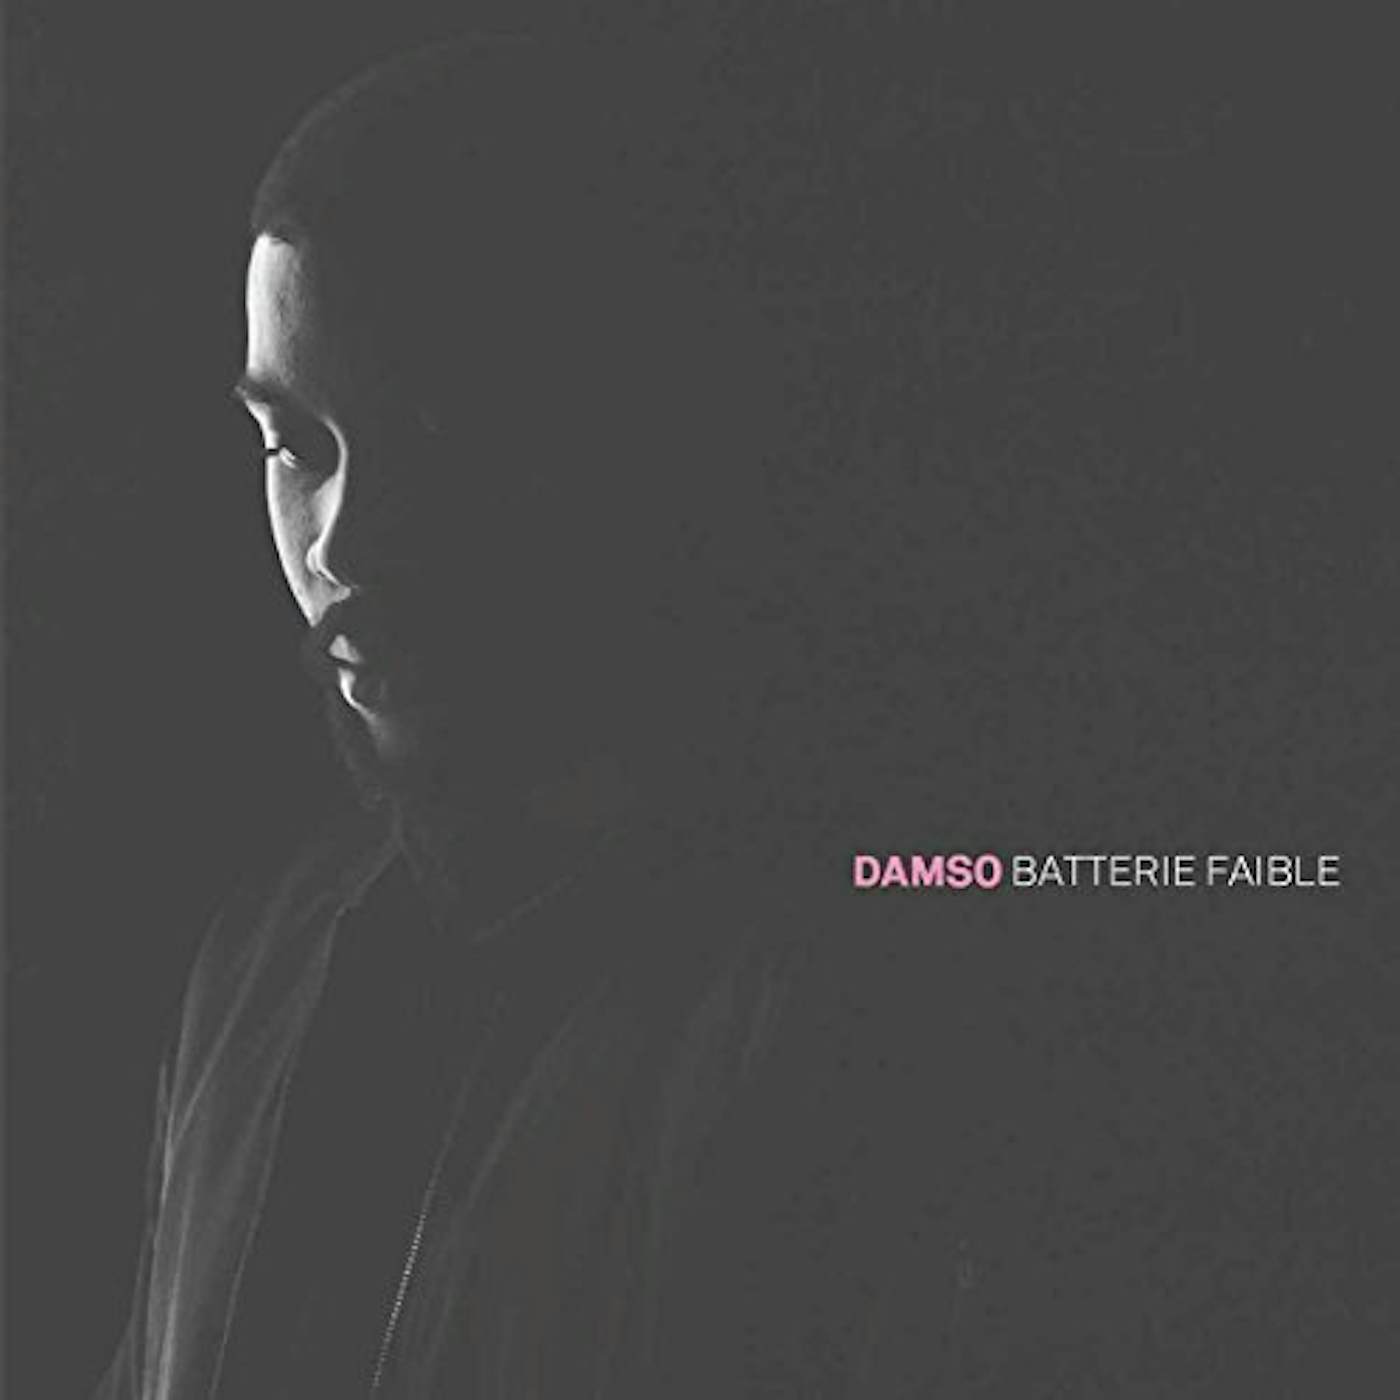 DAMSO batterie faible, 33T en vente sur Ultime Music